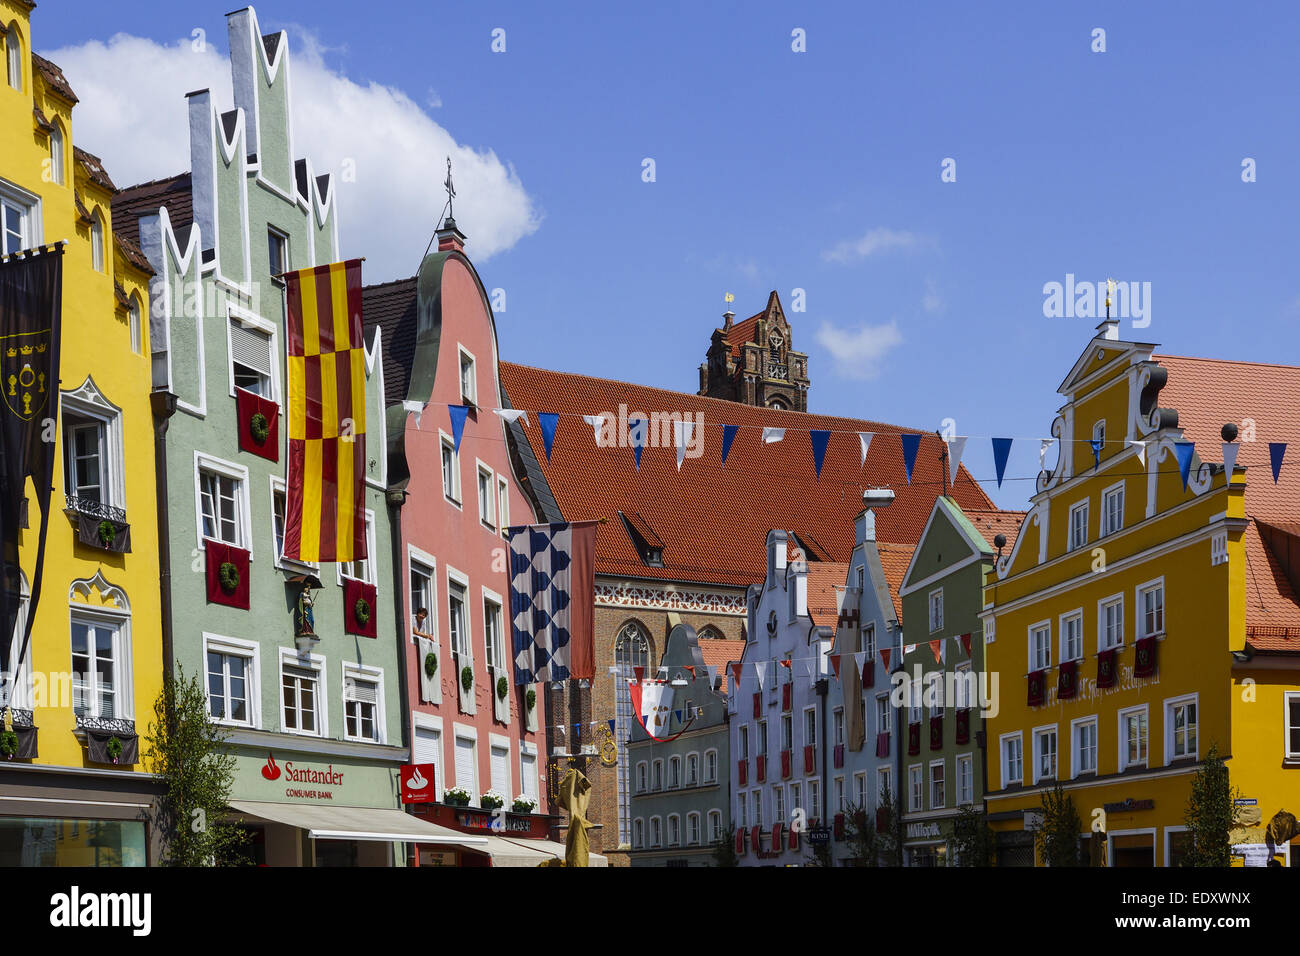 Bunte Fassaden an den Häusern in der Altstadt von Landshut, Bayern, Deutschland, Europa, Colorful facades of buildings in the Ol Stock Photo